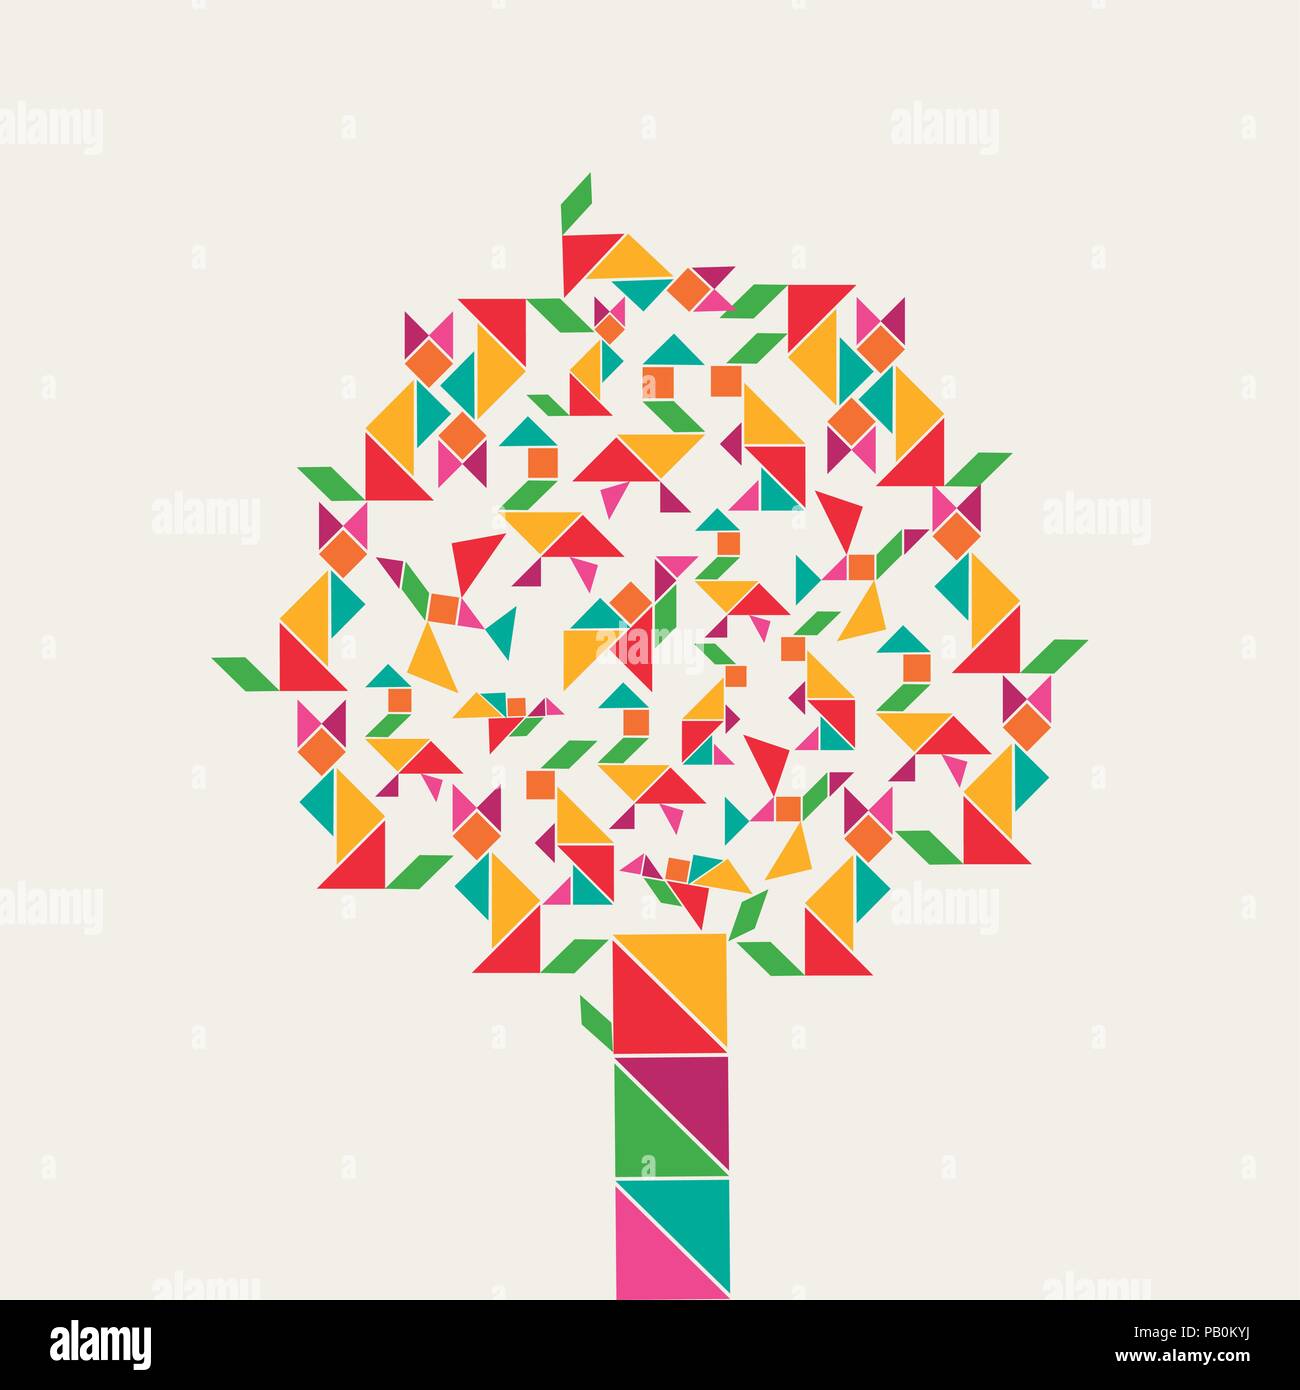 Bunte Baum mit Tangram Spiel Symbole, abstrakte Geometrie Formen von Tieren. Abbildung: Konzept für Kinder lernen oder Bildung. EPS 10 Vektor Stock Vektor